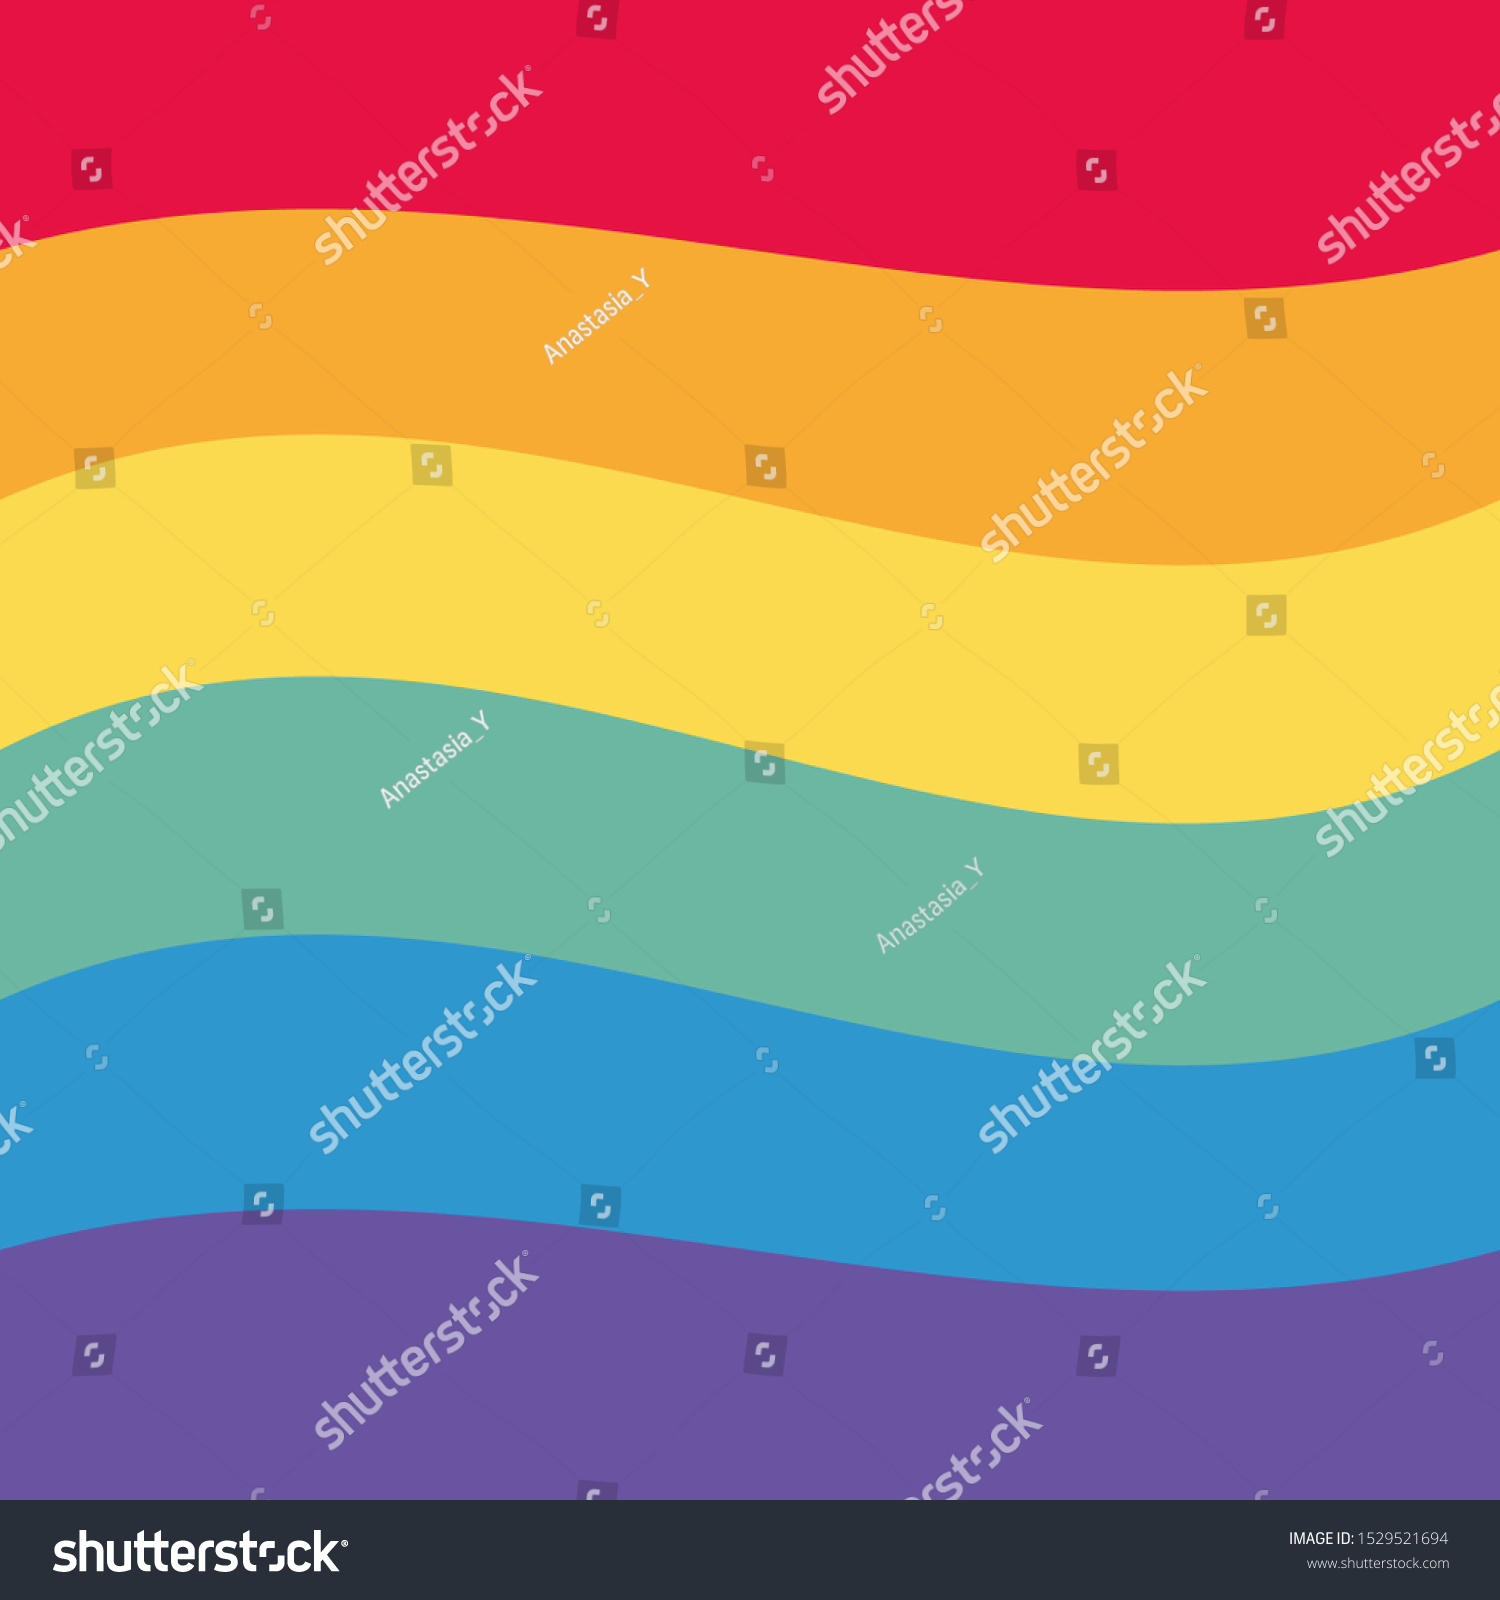 Lgbt Rainbow Flag Tolerance Pride Vector De Stock Libre De Regalías 1529521694 Shutterstock